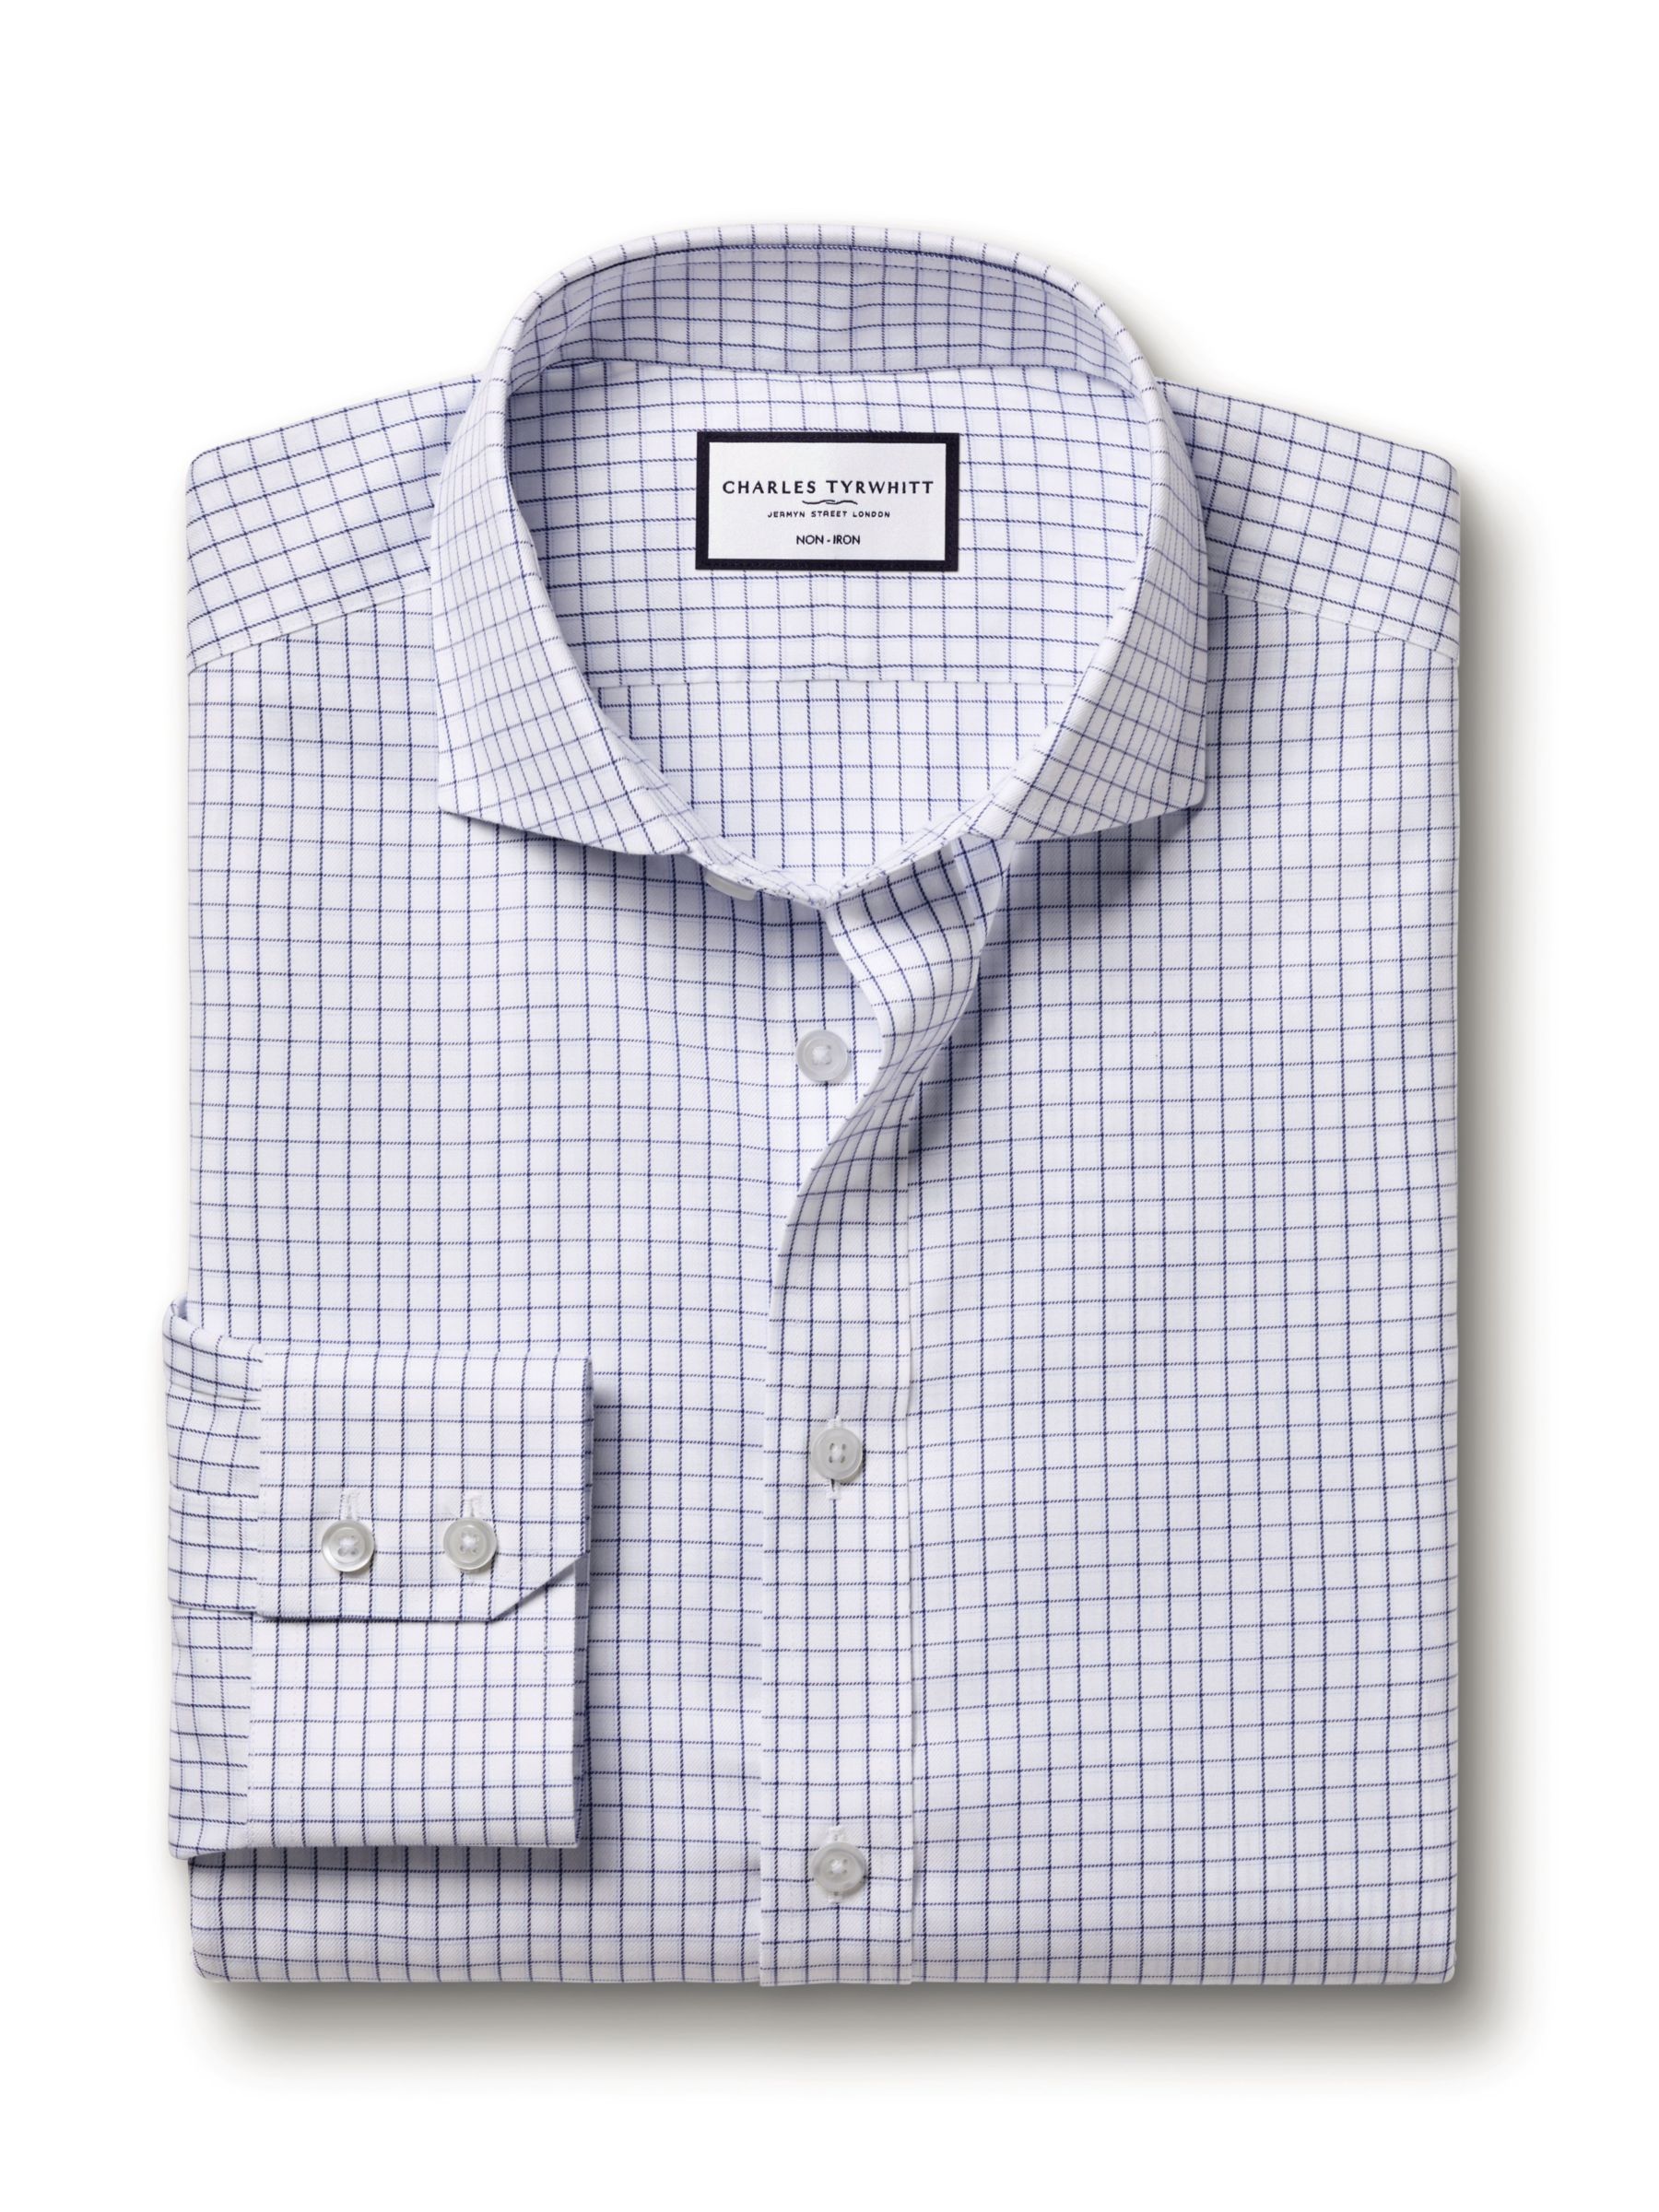 Charles Tyrwhitt Key Check Non-Iron Twill Shirt, Royal Blue, 14.5 33